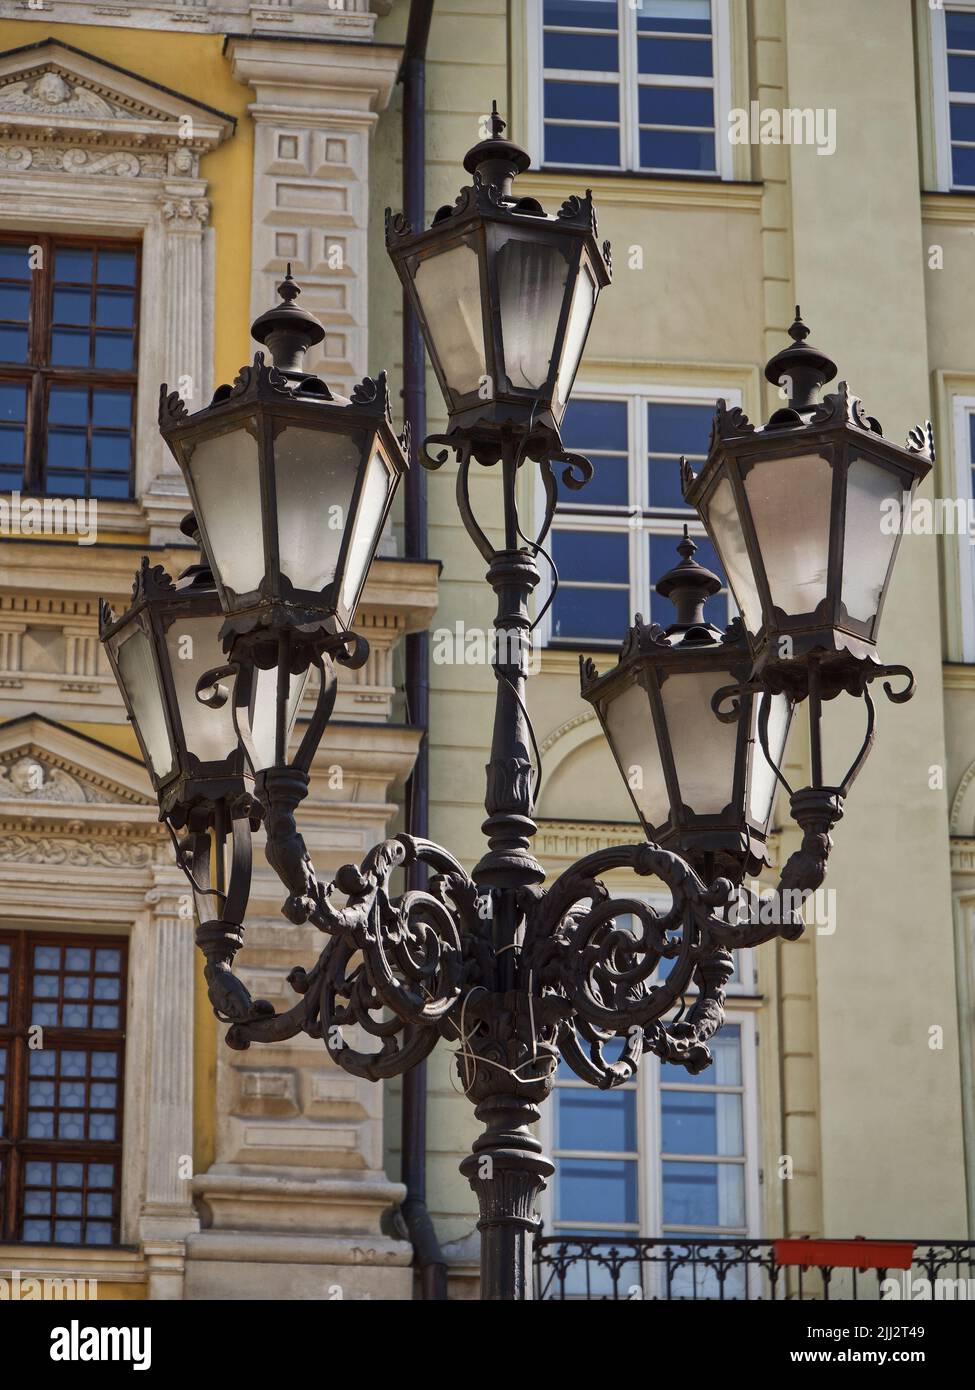 Ein alter Laternenpfosten in einer europäischen Stadt. Straßenbeleuchtung. Stockfoto